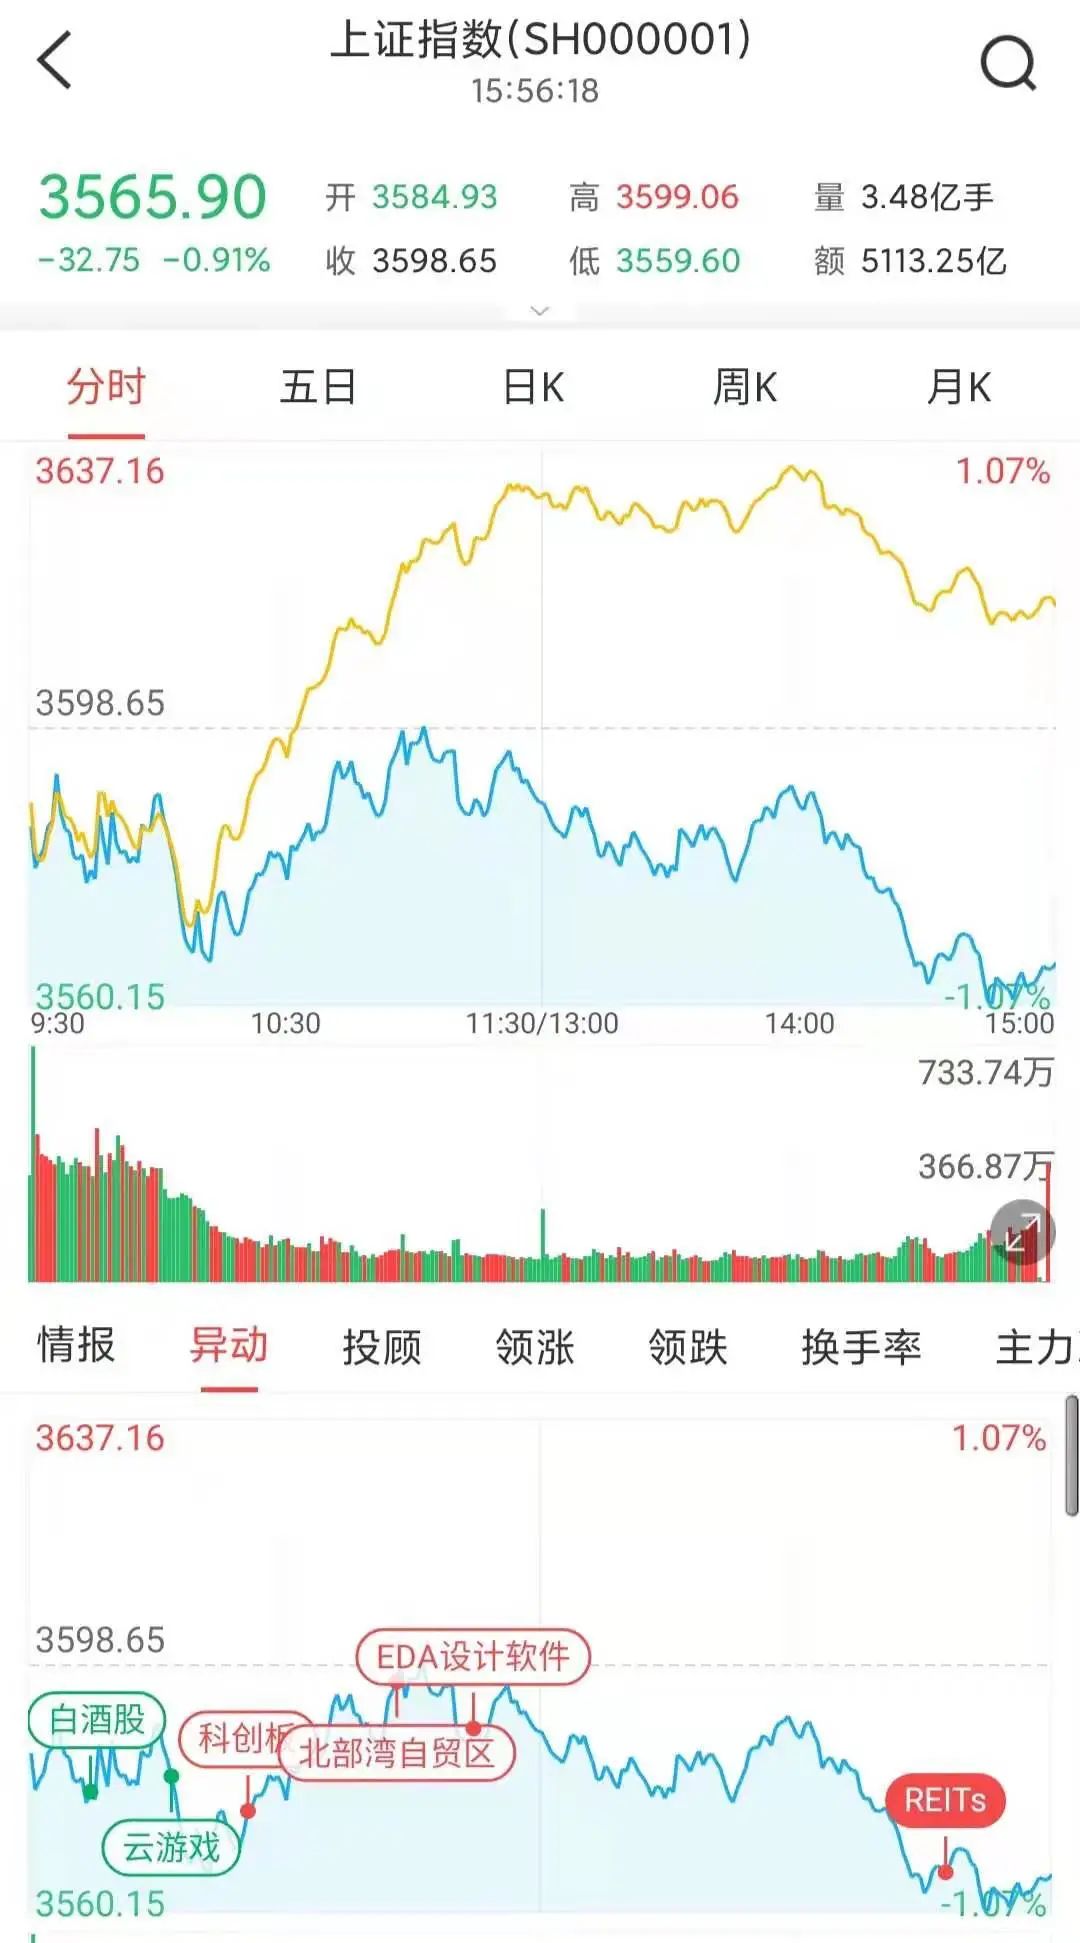 什么情况?跌停板上都是“熟人”新晋中国首富辞职让这只股重挫逾9%抱团股土崩瓦解还是假摔?